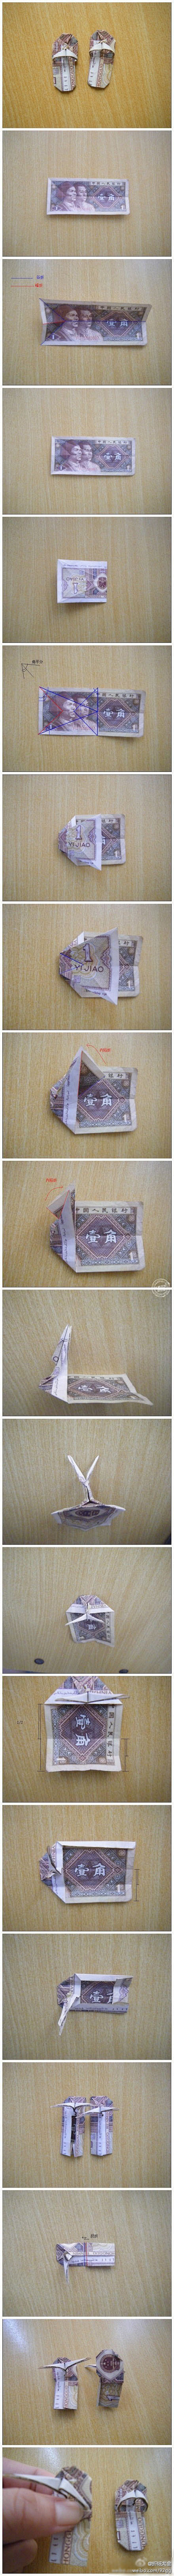 折纸大全： DIY折纸教程，一毛錢手工折...